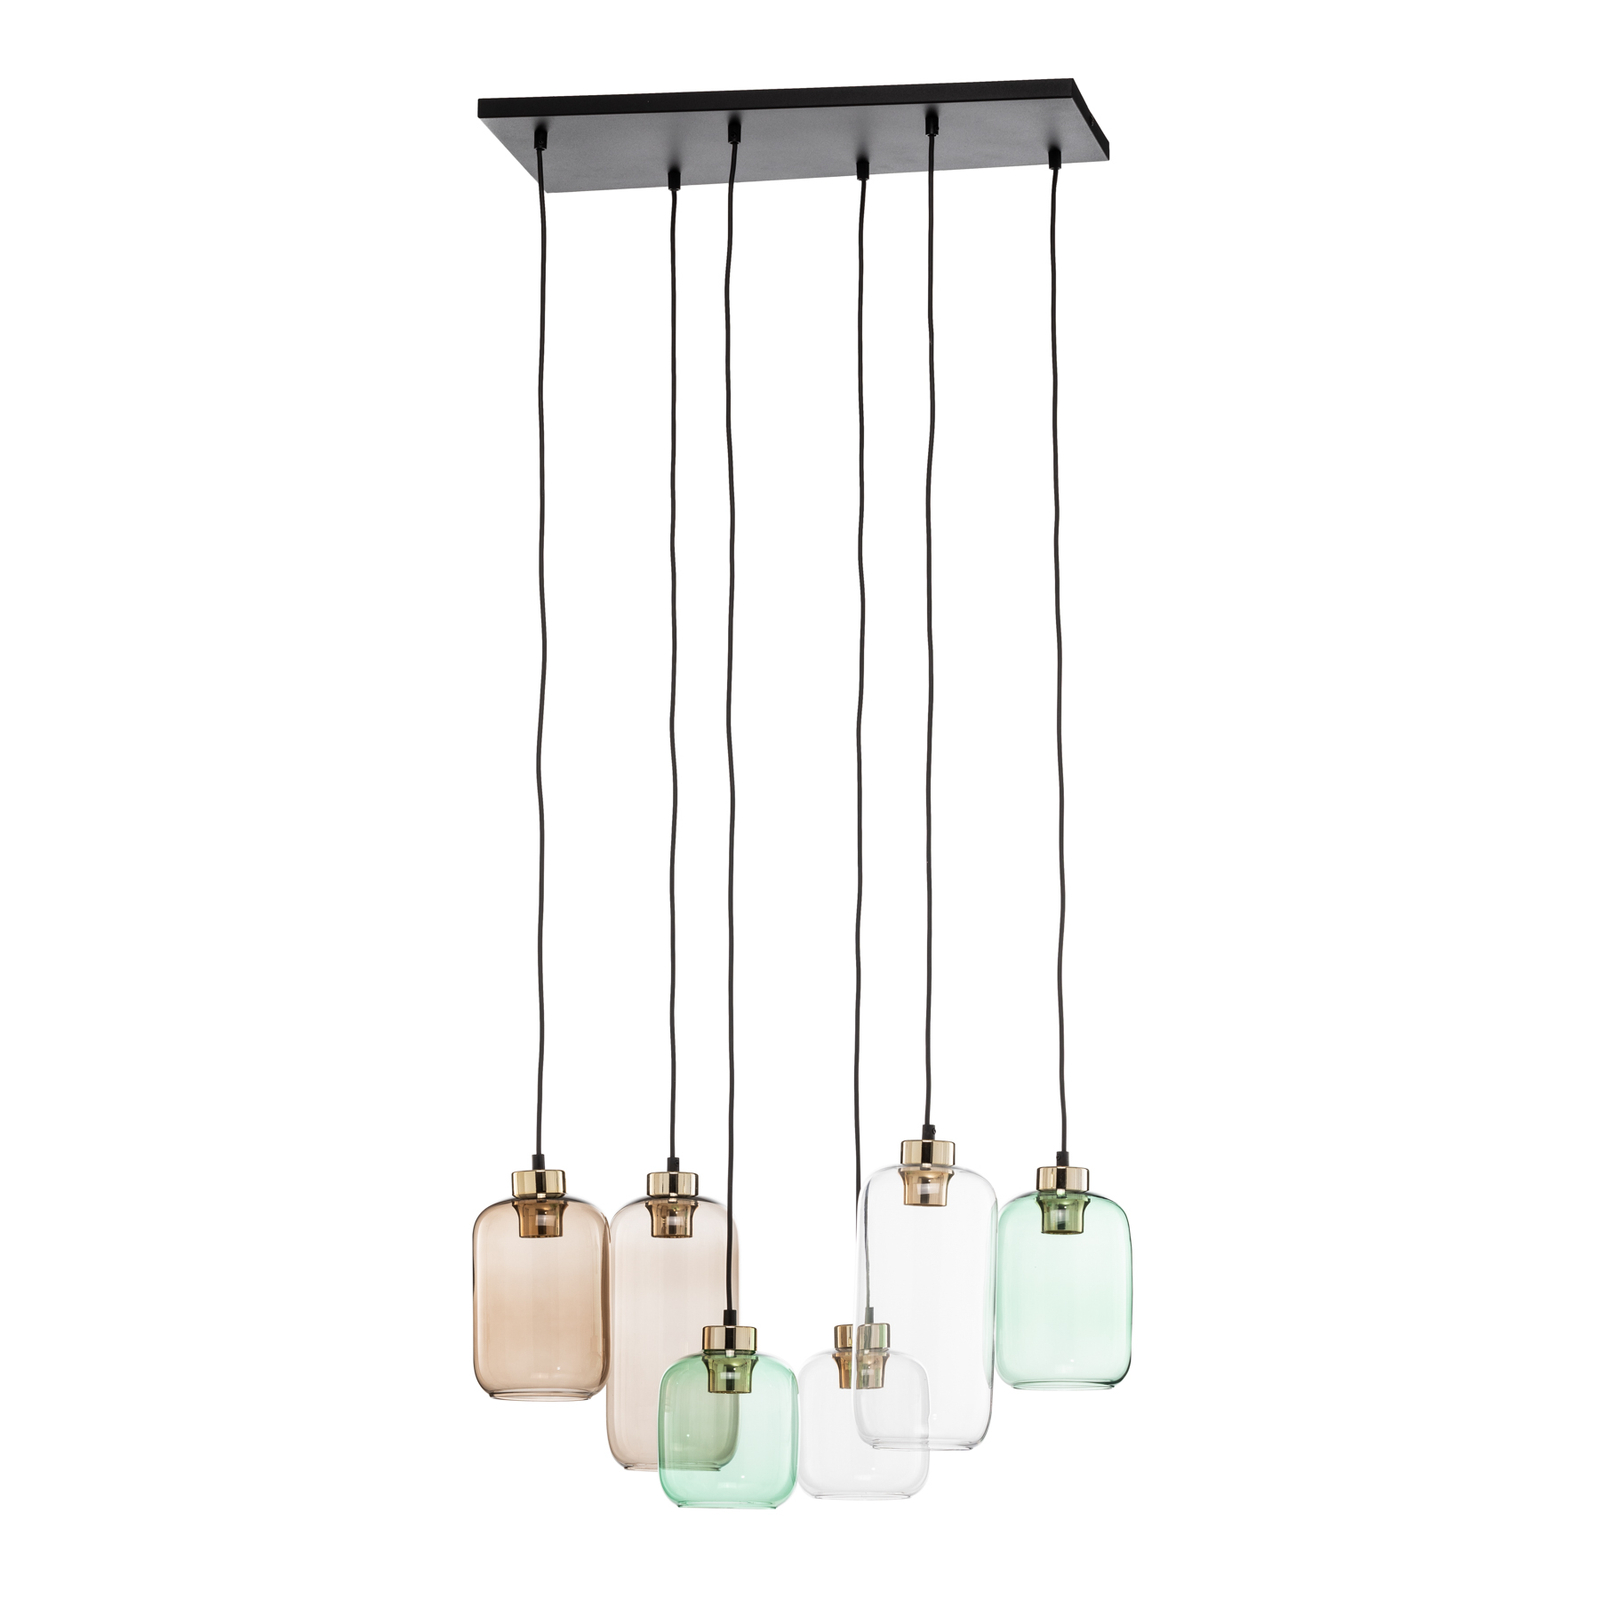 Marco Green hanglamp, 6-lamps helder/groen/bruin